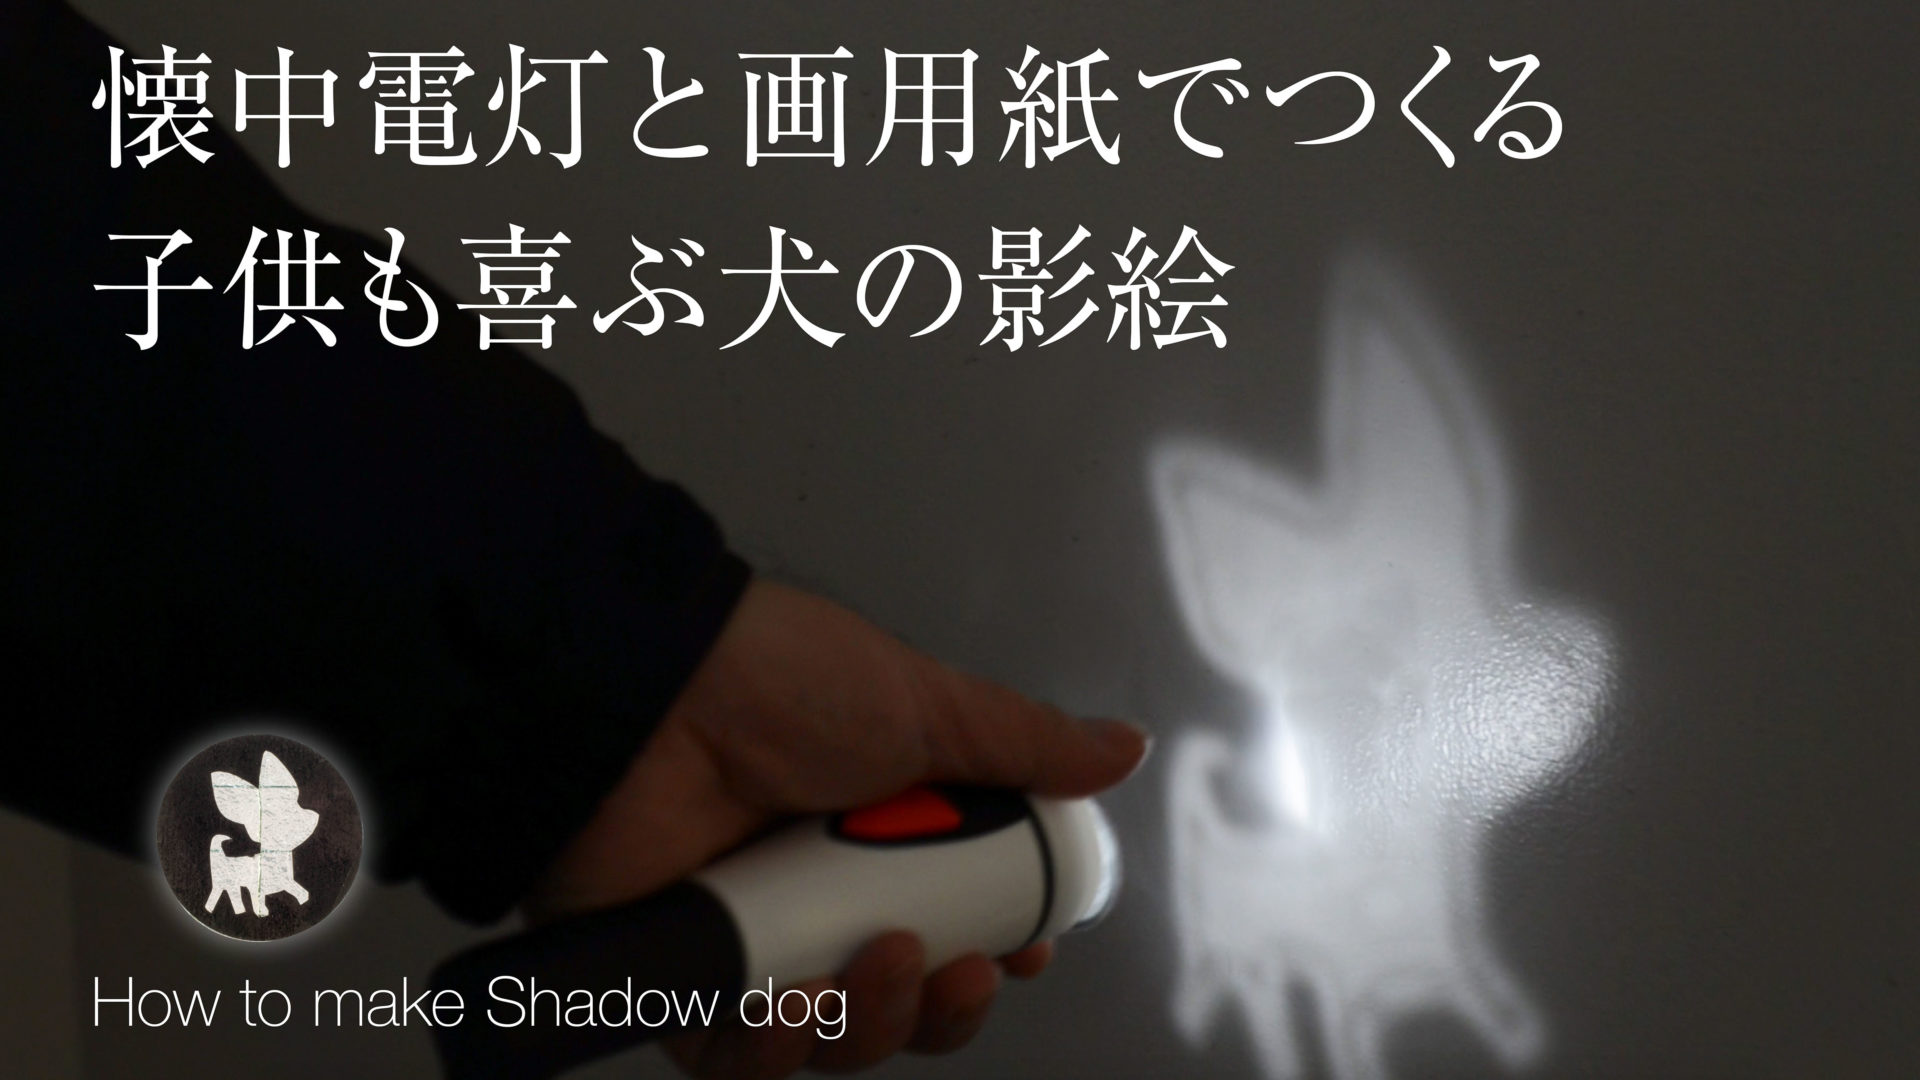 【犬のイラスト】影絵の作り方・ダイソーの懐中電灯と画用紙で影絵アートの作り方。影絵遊び・子供とあそぼう